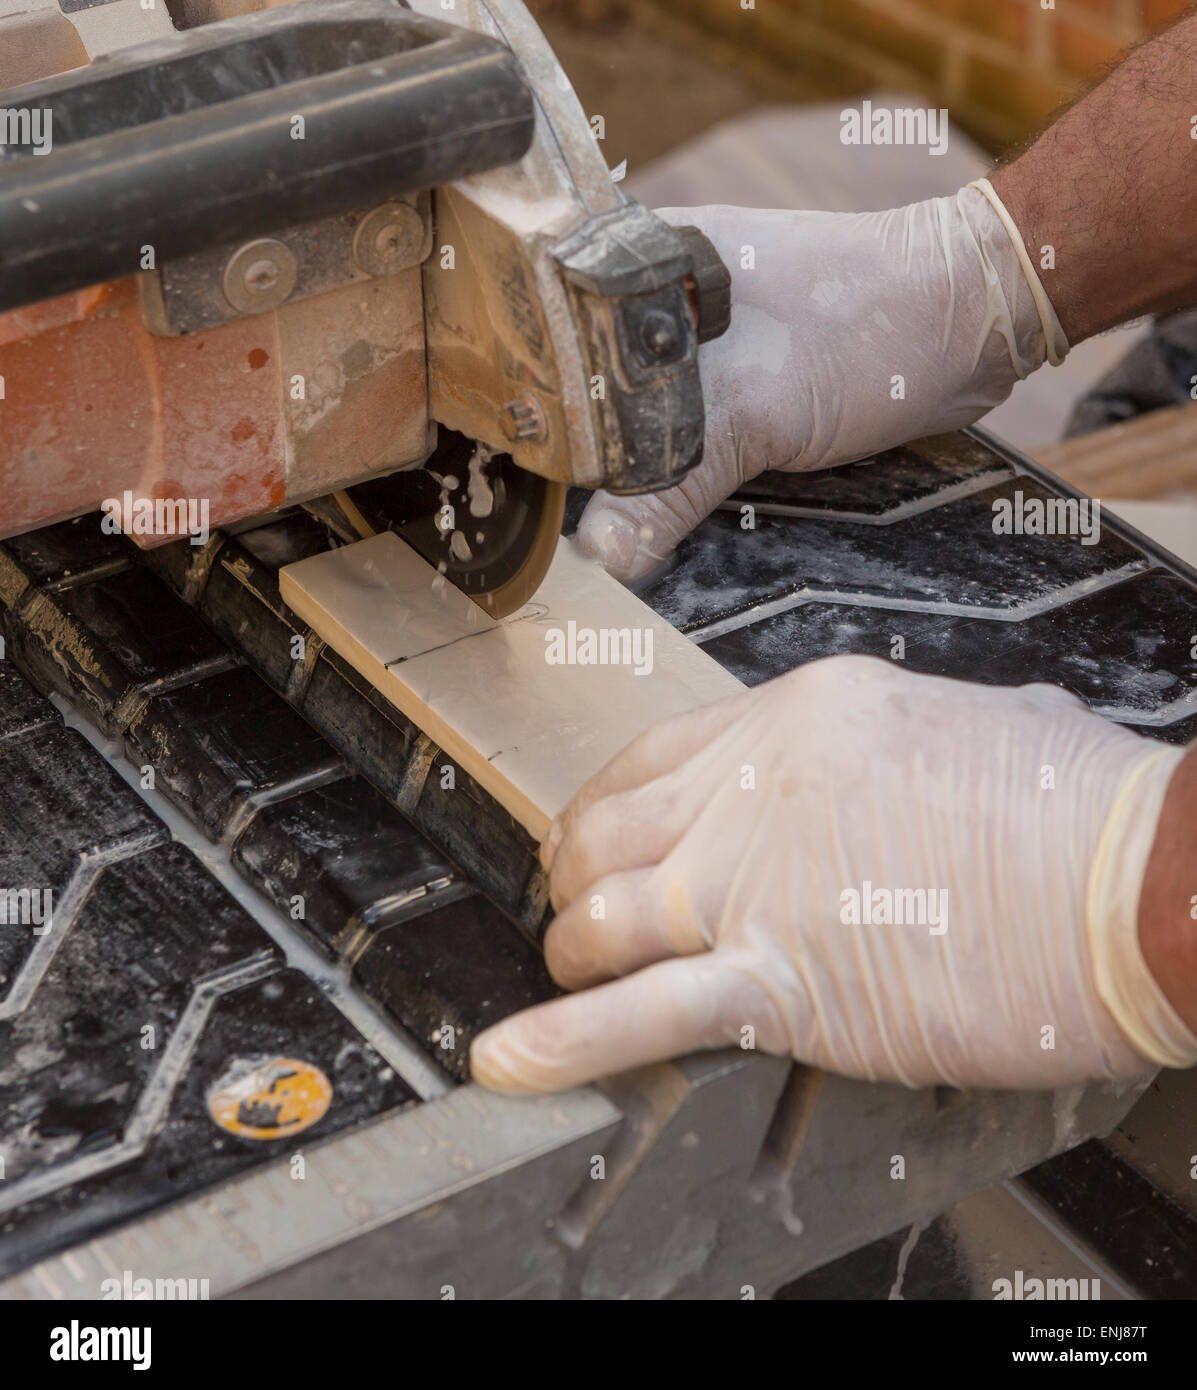 ARLINGTON, VIRGINIA, USA - Arbeiter mit Latex Handschuhen schneidet keramische Fliesen mit einem feuchten Fliesen sah. Stockfoto